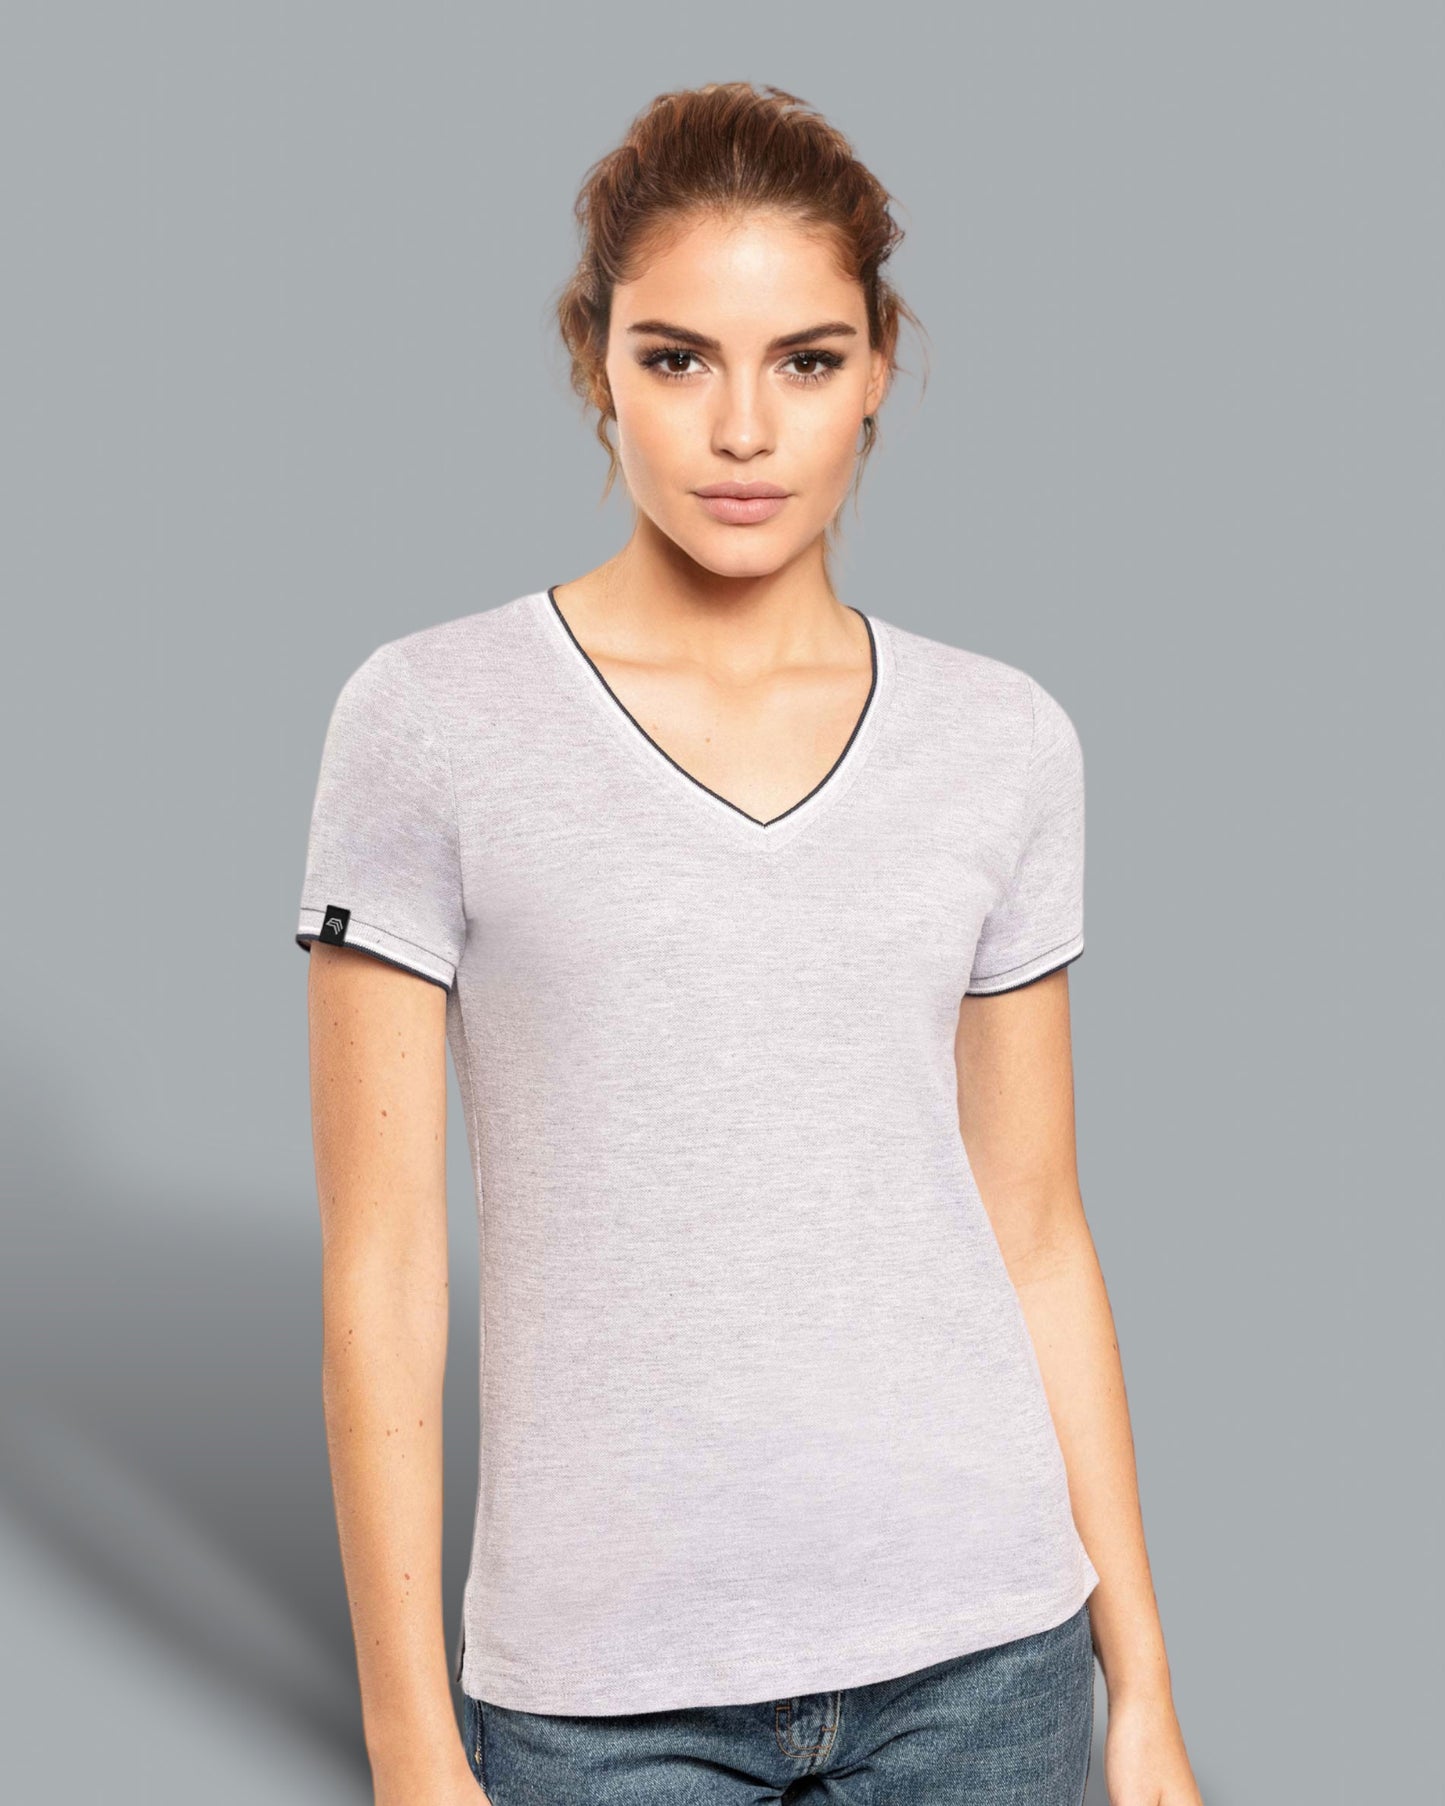 KRB K394 ― Damen Piqué-Trikot V-Neck T-Shirt - Navy Blau / Grau / Weiß